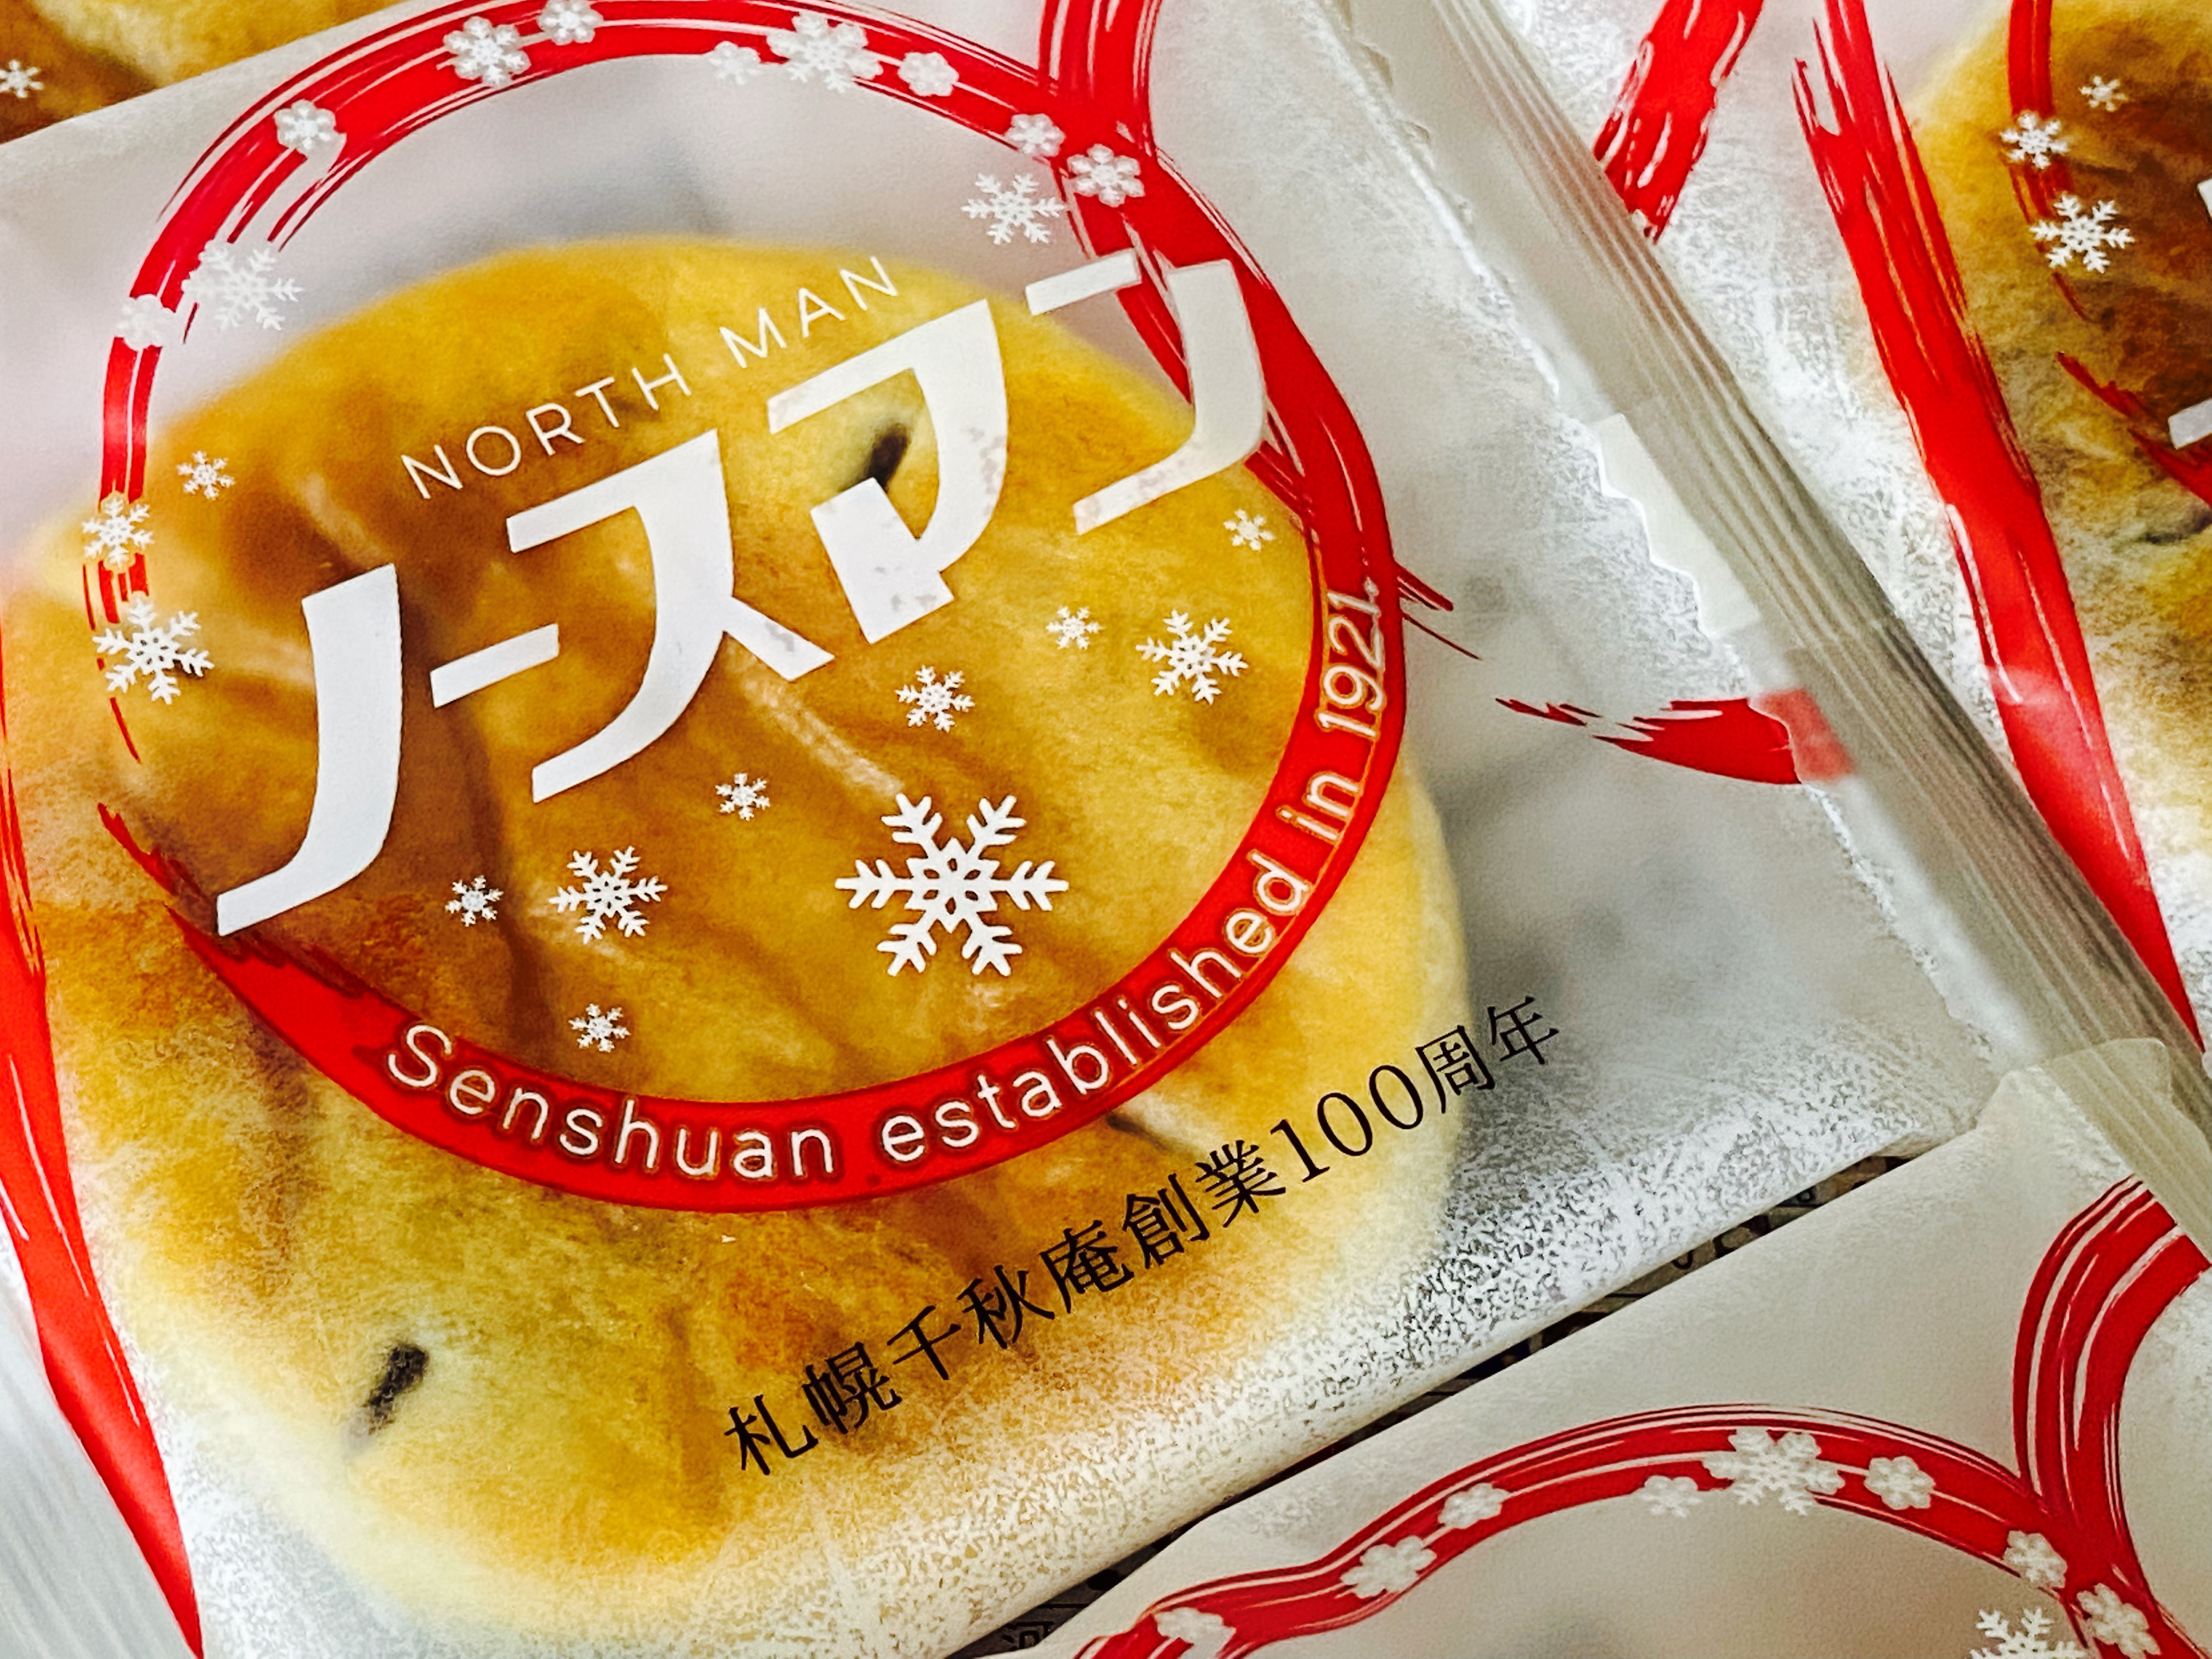 北海道産の小豆を使用したこし餡をパイで包み、甘さをおさえ、しっとりとした口あたりに仕上げた「ノースマン